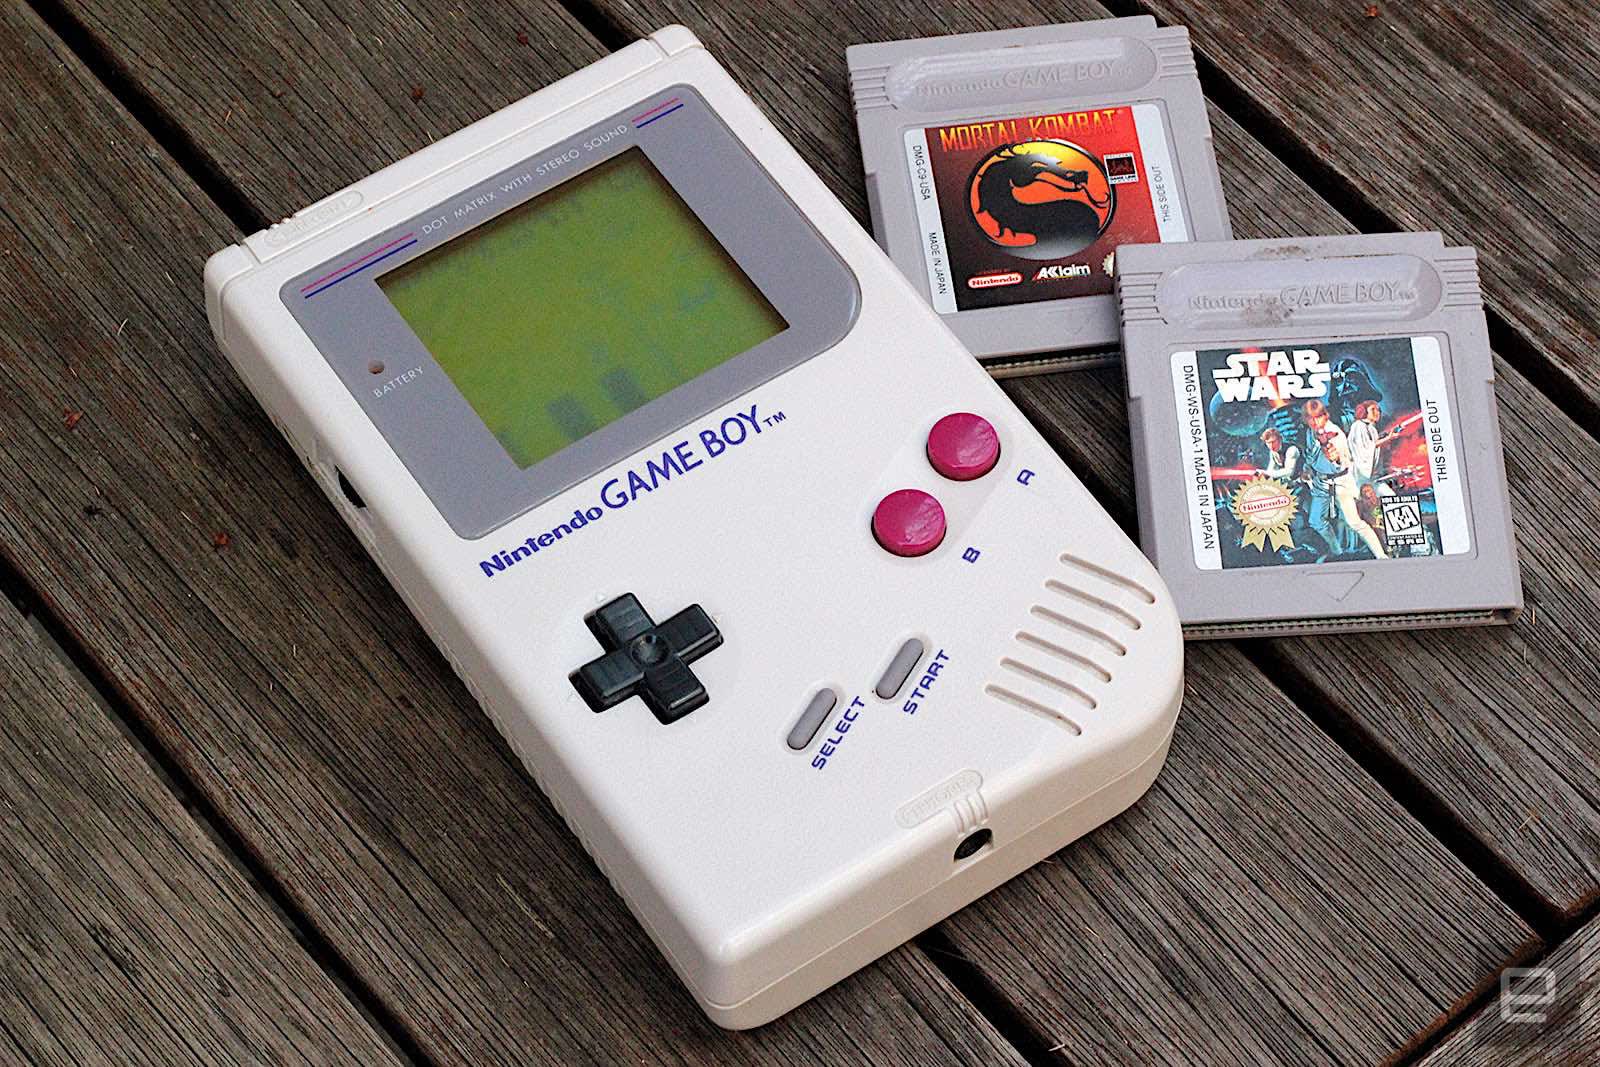 Consulta esta brillante Nintendo Game Boy at 30: As fun as it ever was | Engadget